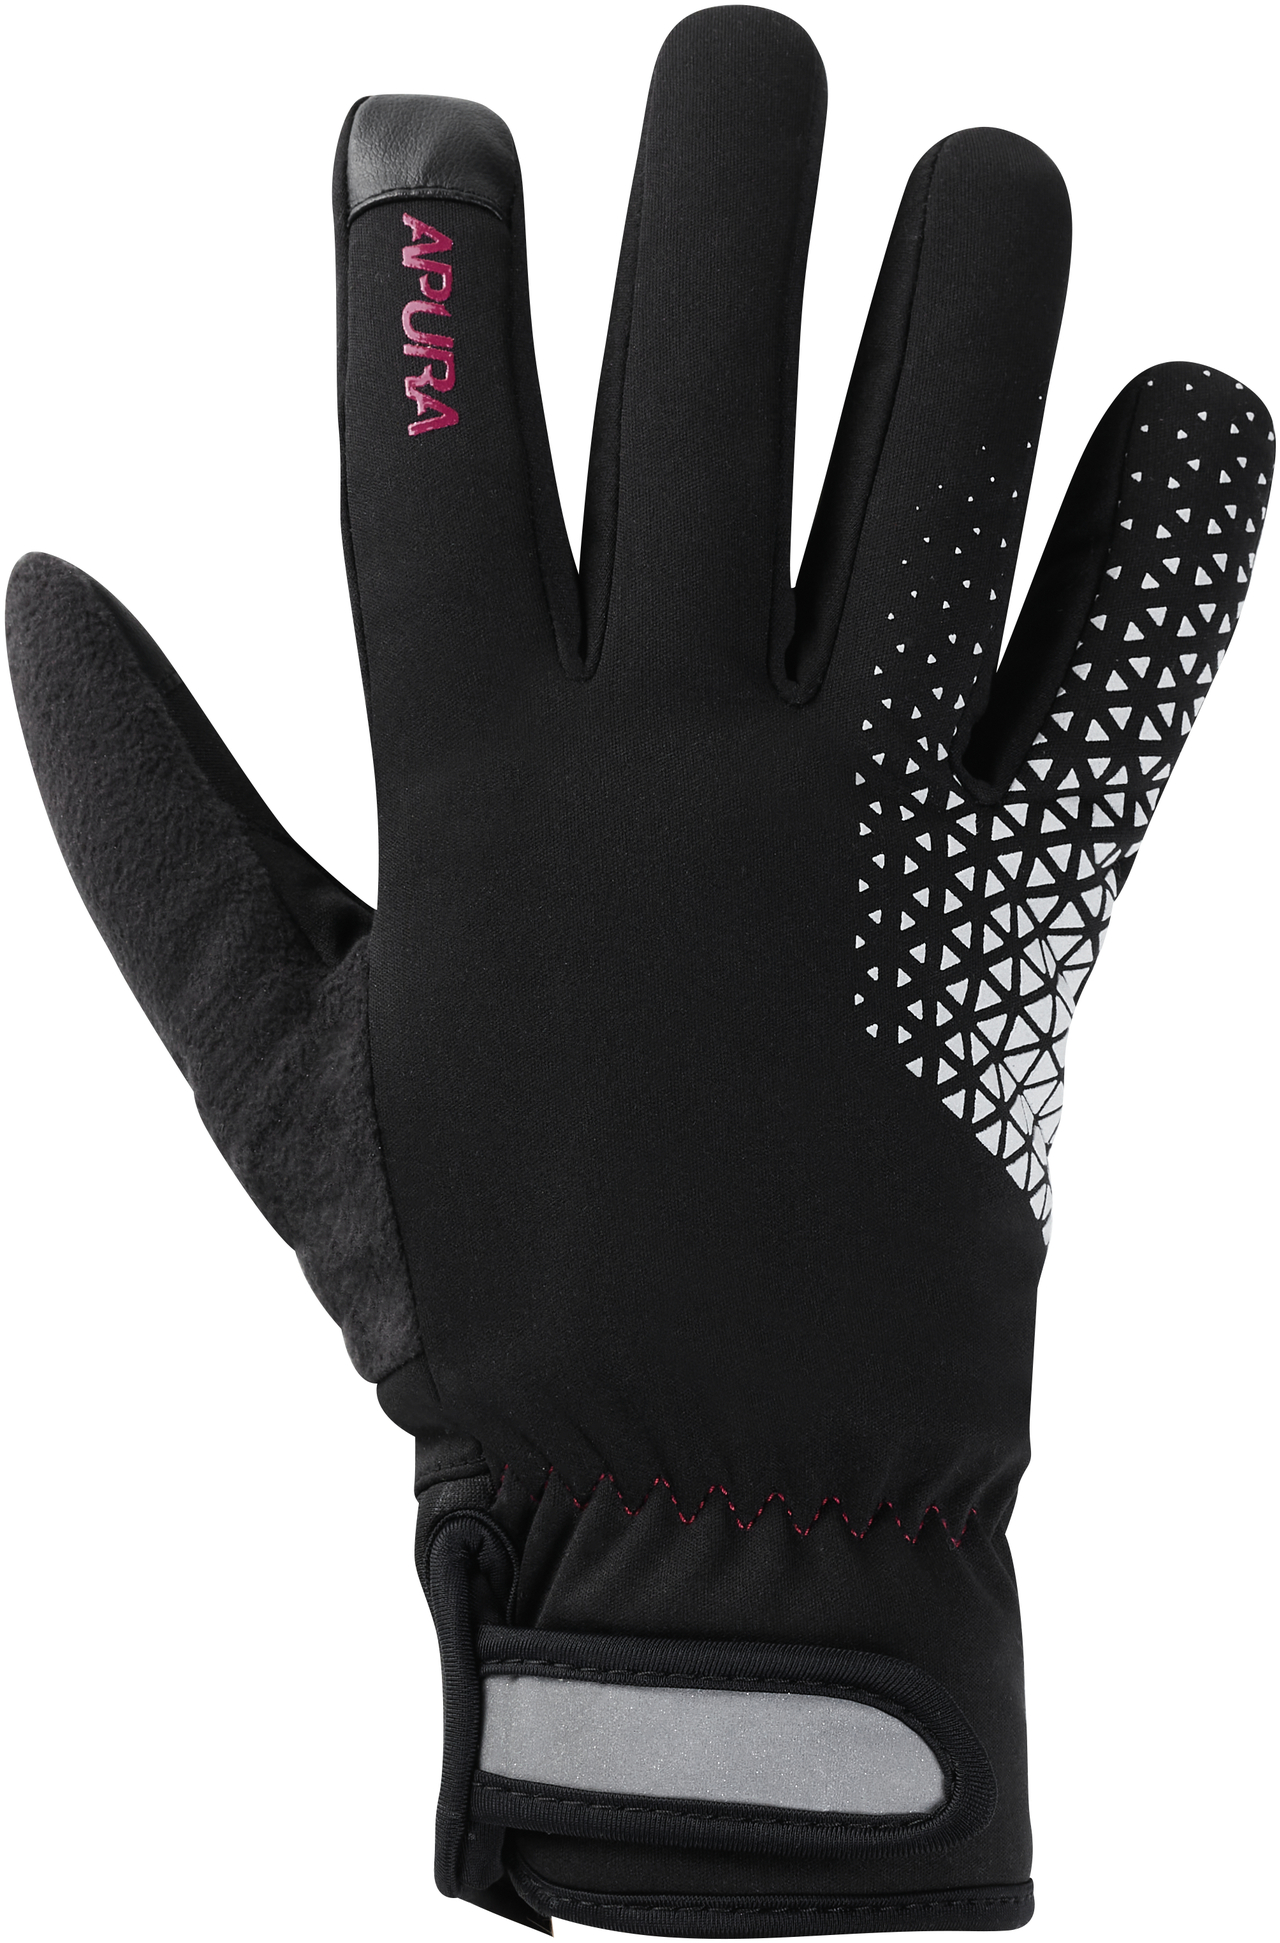 Bekleidung/Handschuhe: Apura  Damen Winterhandschuhe Ionosphere S Schwarz